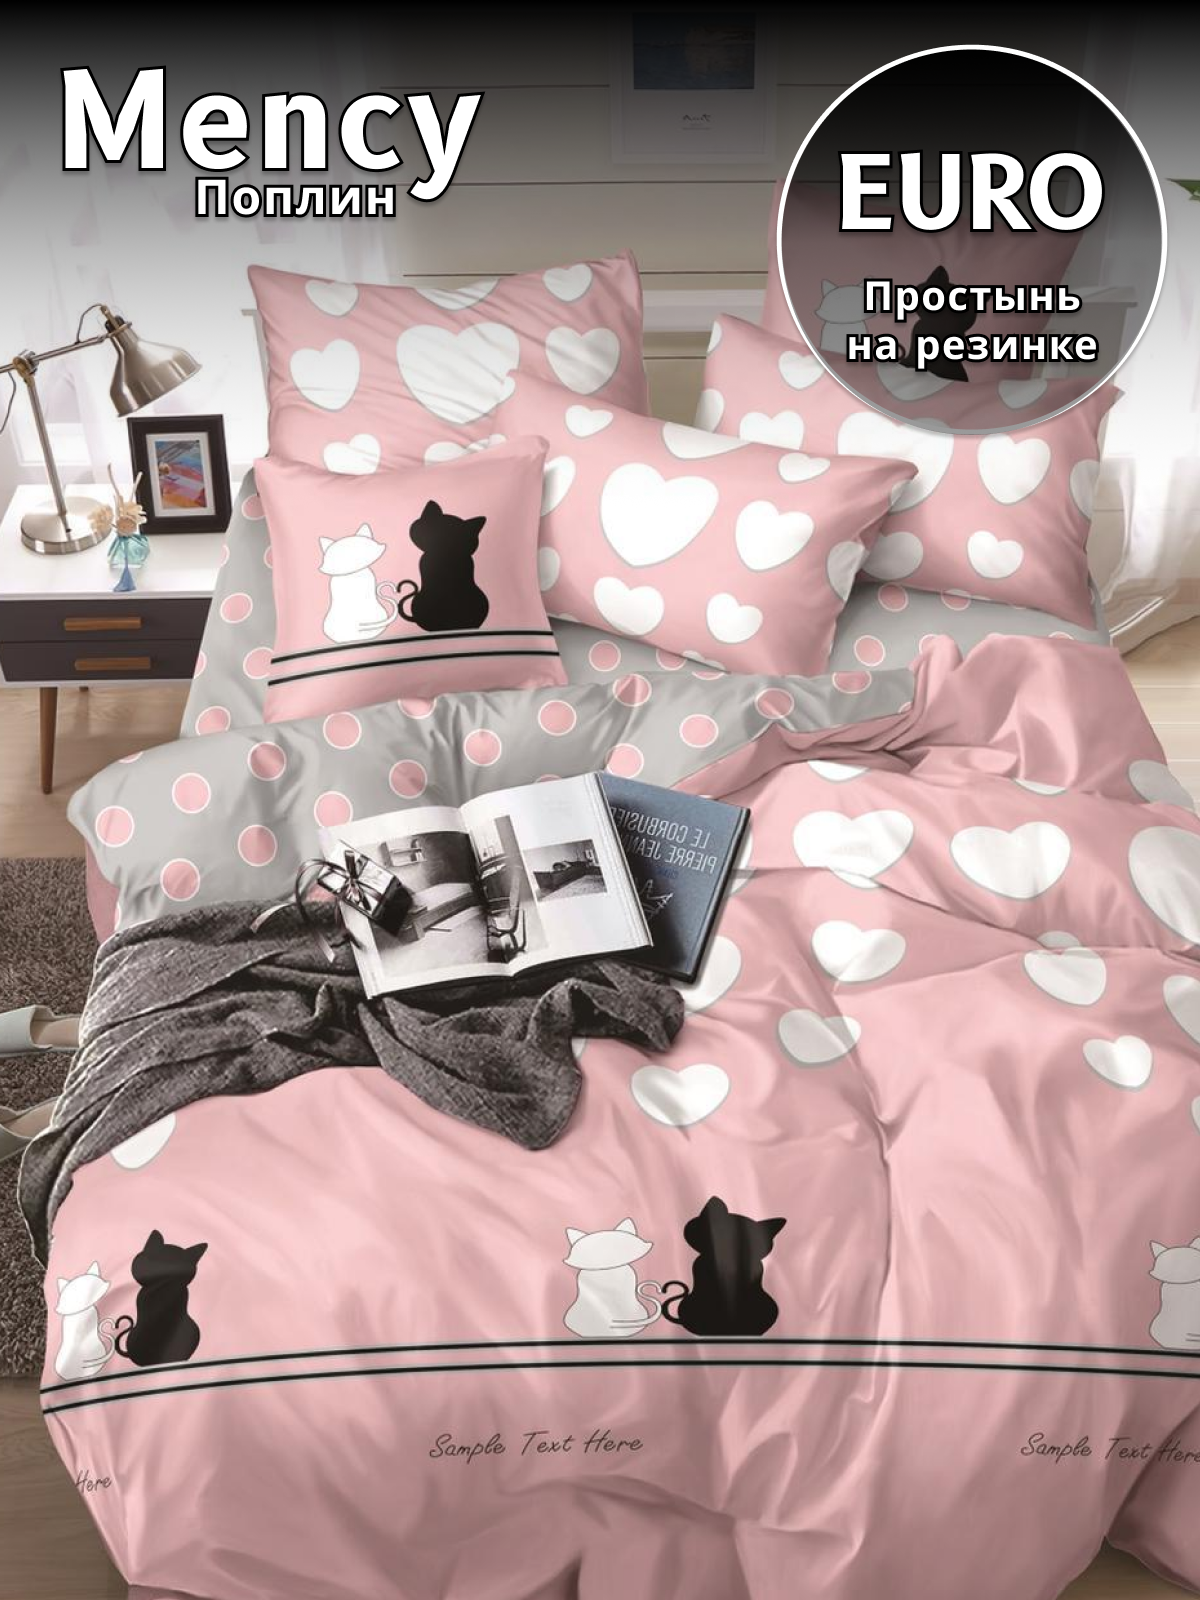 Комплект постельного белья Belle Store Mency House Евро поплин розовый